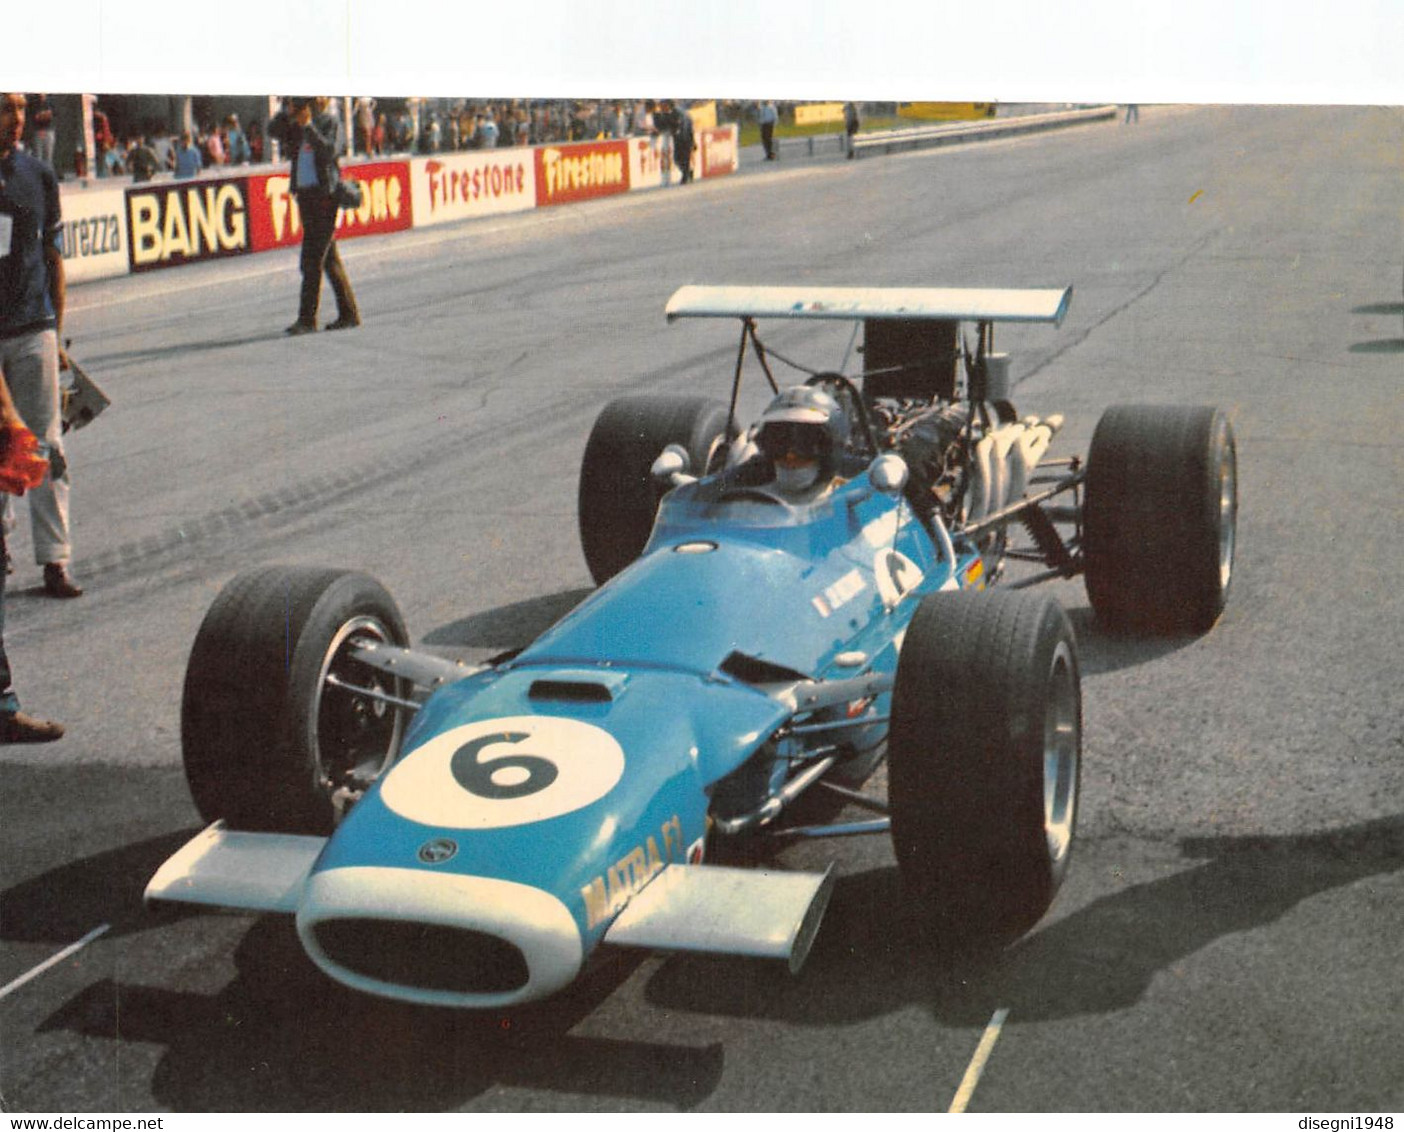 010998 "JEAN PIERRE BELTOISE - MATRA F. 1 - GRAN PREMIO D'ITALIA 1968 - MONZA" CARTOLINA  ORIG. NON SPED. - Autosport - F1